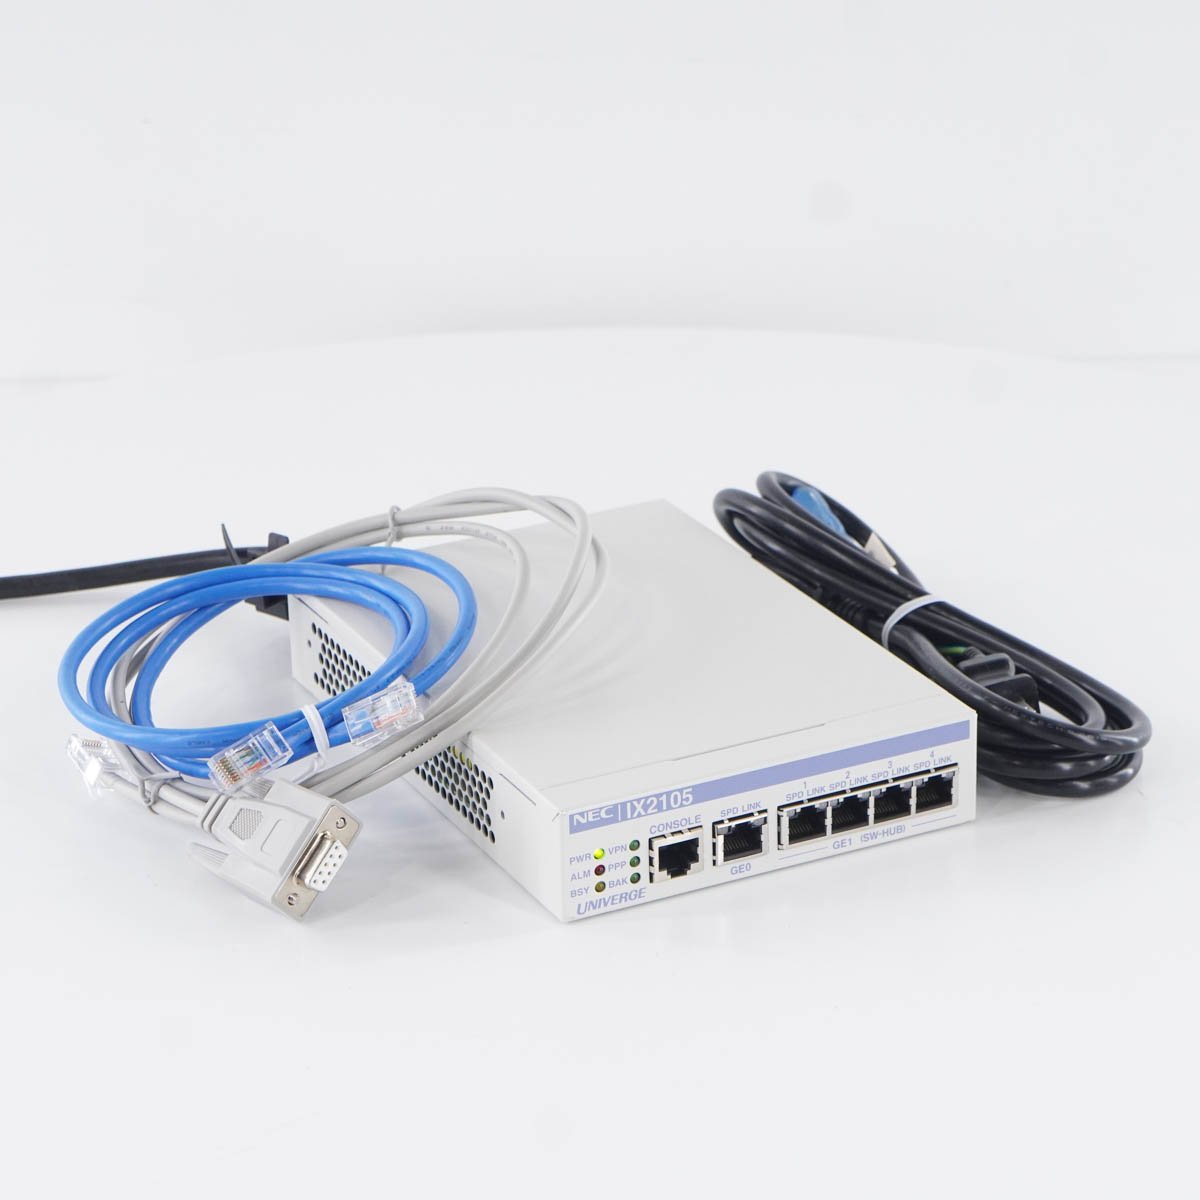 NEC 5年無償保証 VPN対応高速アクセスルータ UNIVERGE IX2107 BI000118